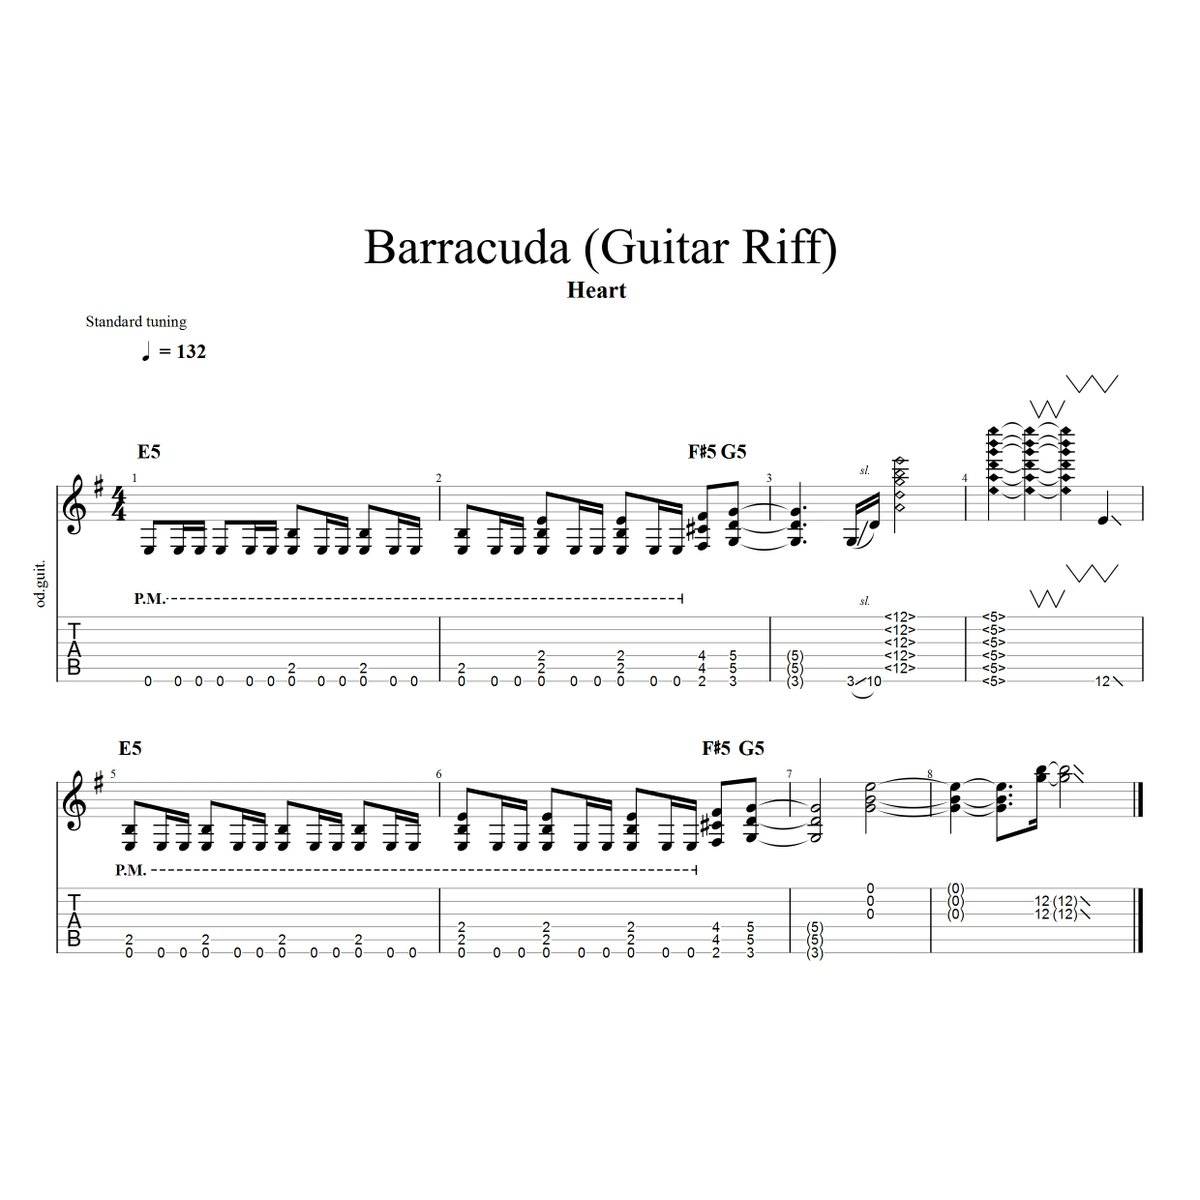 #1日1リフ 232日目
Heart  - Barracuda
のギターリフです。

あまりこのバンド/曲のことは知らなかったのですが、
ガールズロックの先駆者のようですね。
うっすらフランジャーがかかっているような気がします。😉 

#Heart #Barracuda #LittleQueen #RogerFisher #HowardLeese #GuitarRiff